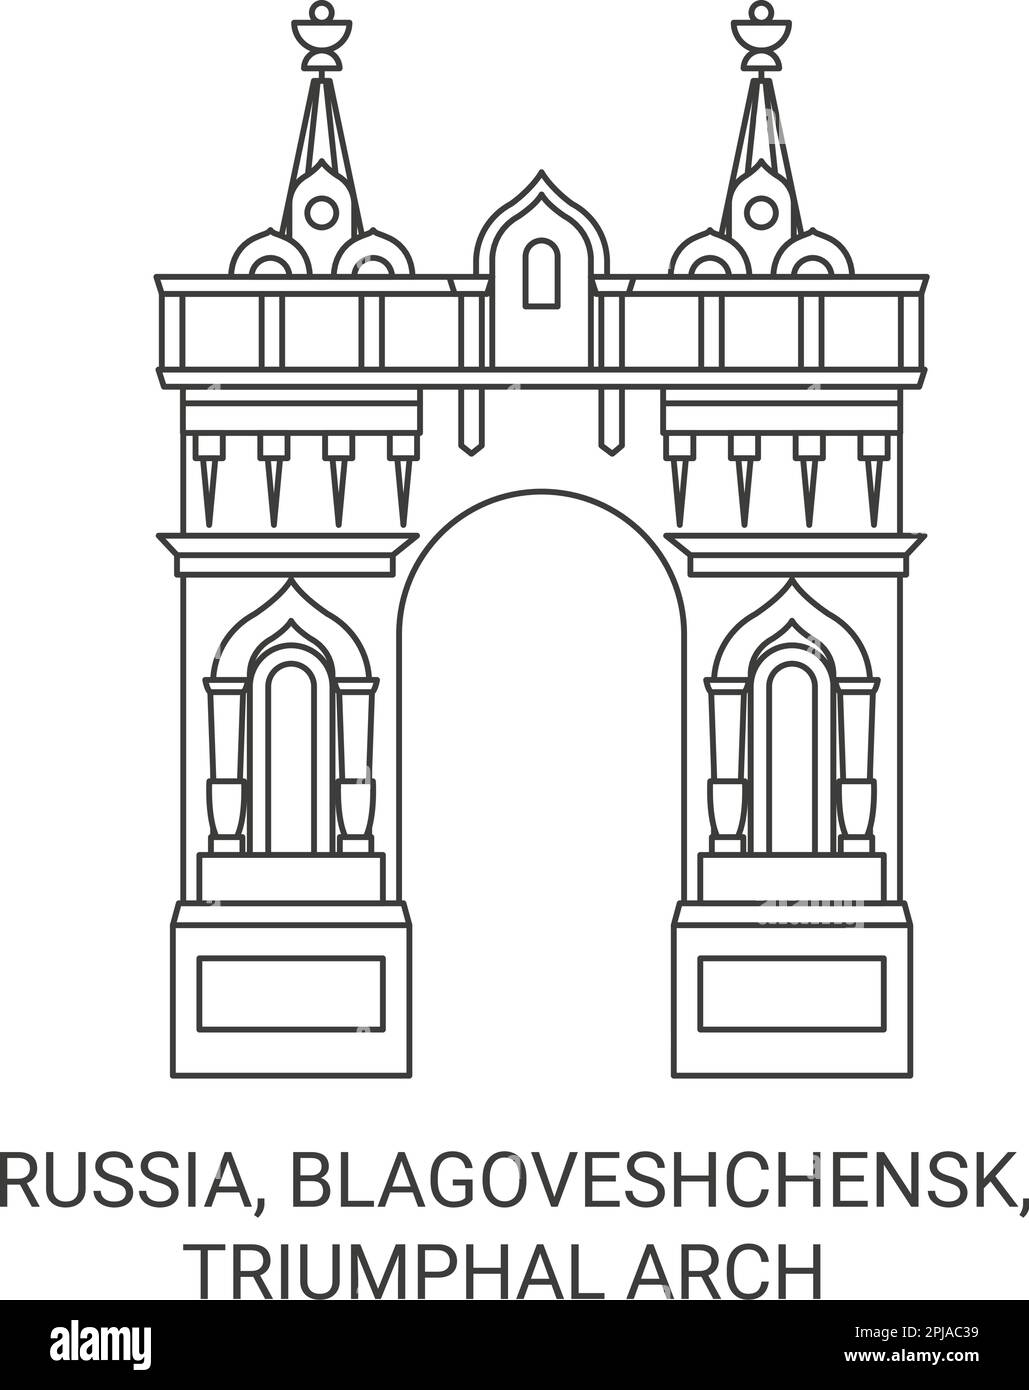 Russia, Blagoveshchensk, Triumphal Arch travel landmark vector illustration Stock Vector